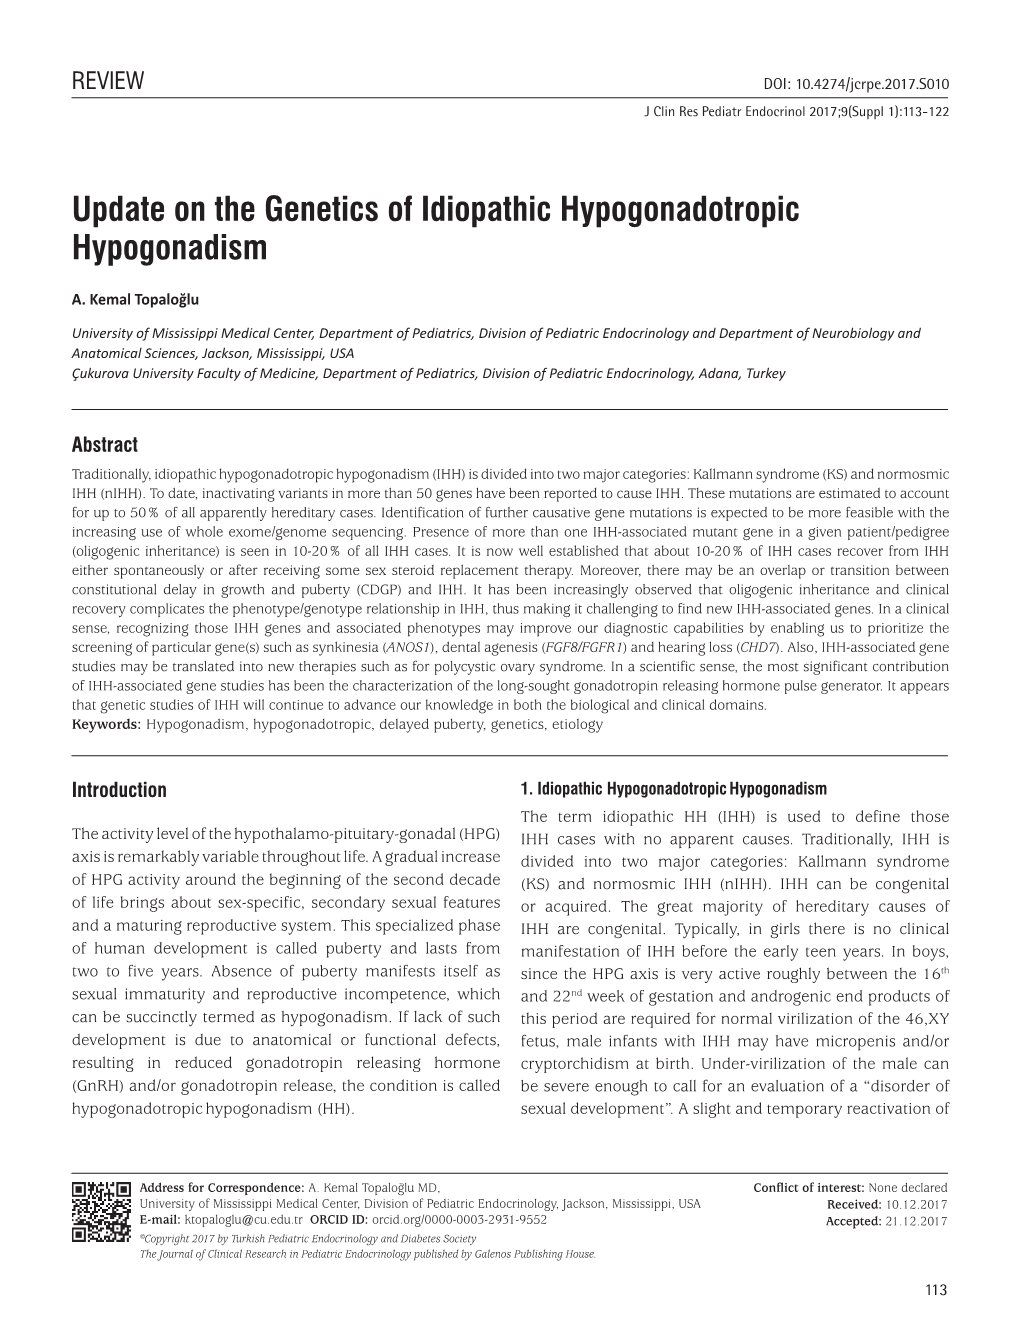 Update on the Genetics of Idiopathic Hypogonadotropic Hypogonadism